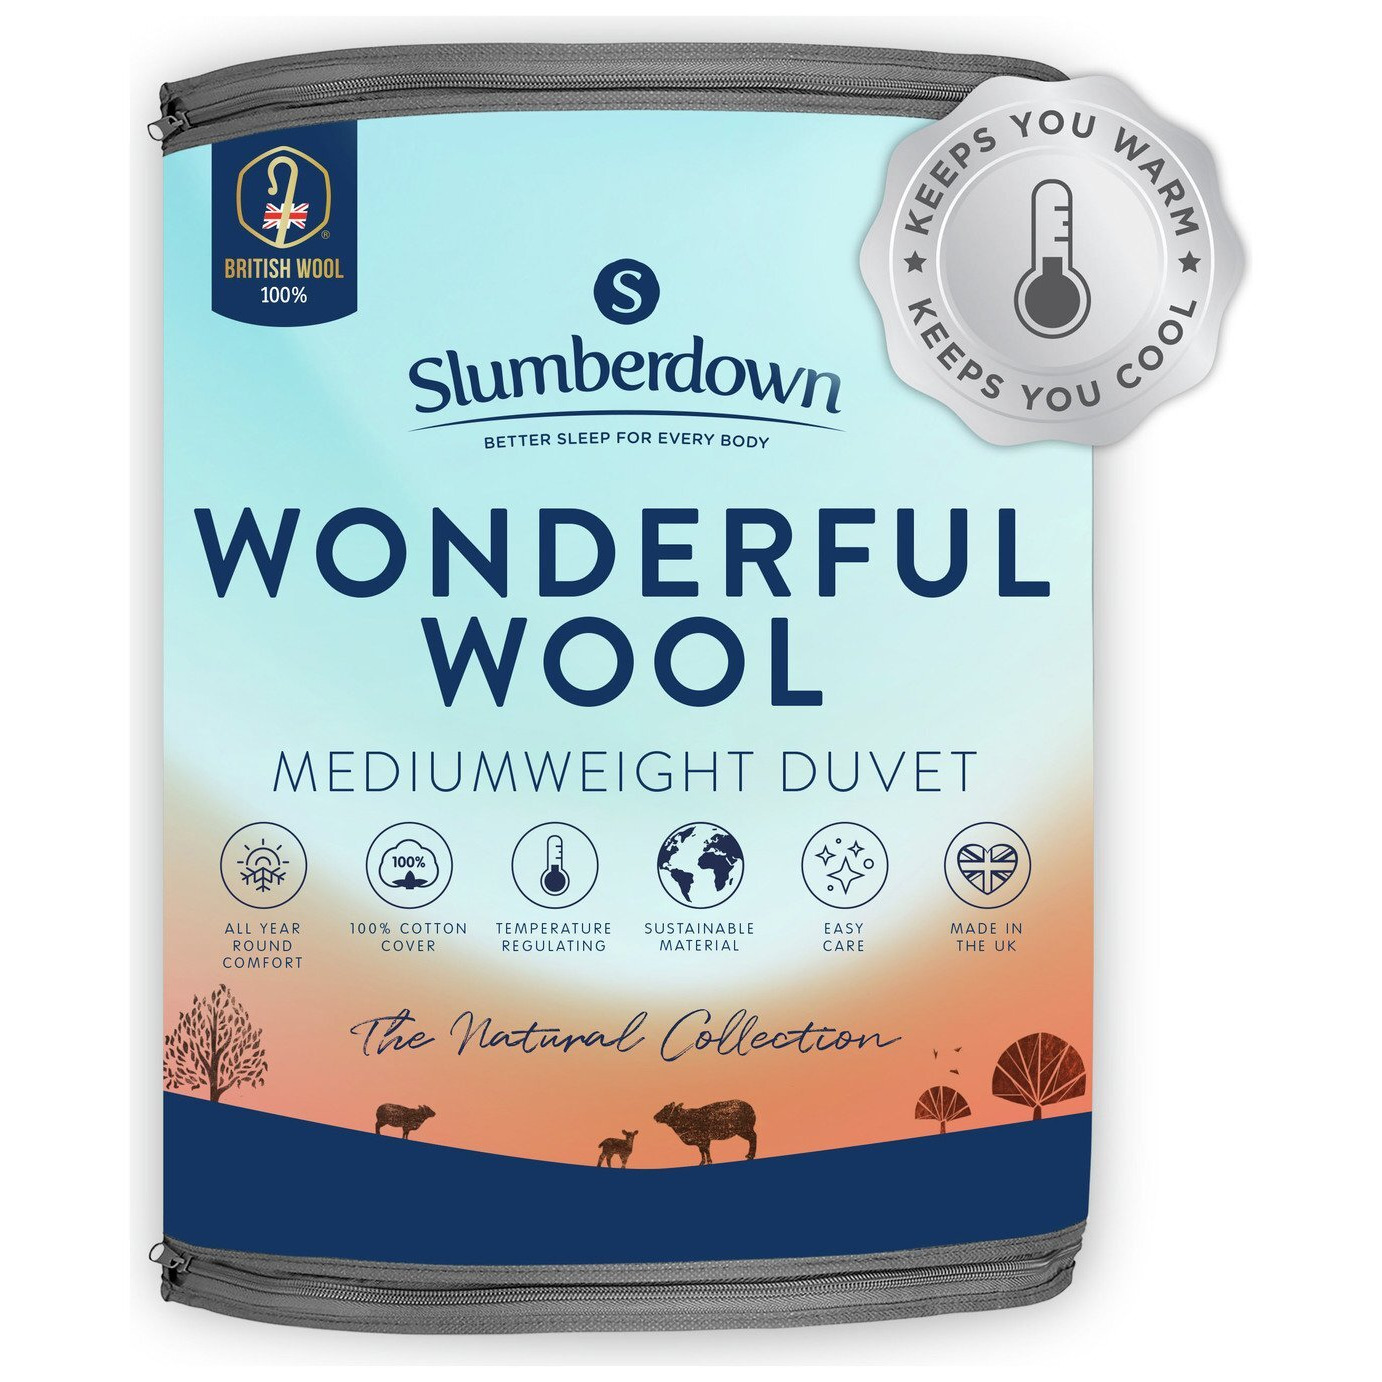 Slumberdown Wonderful Wool Medium Weight Duvet - Kingsize - image 1